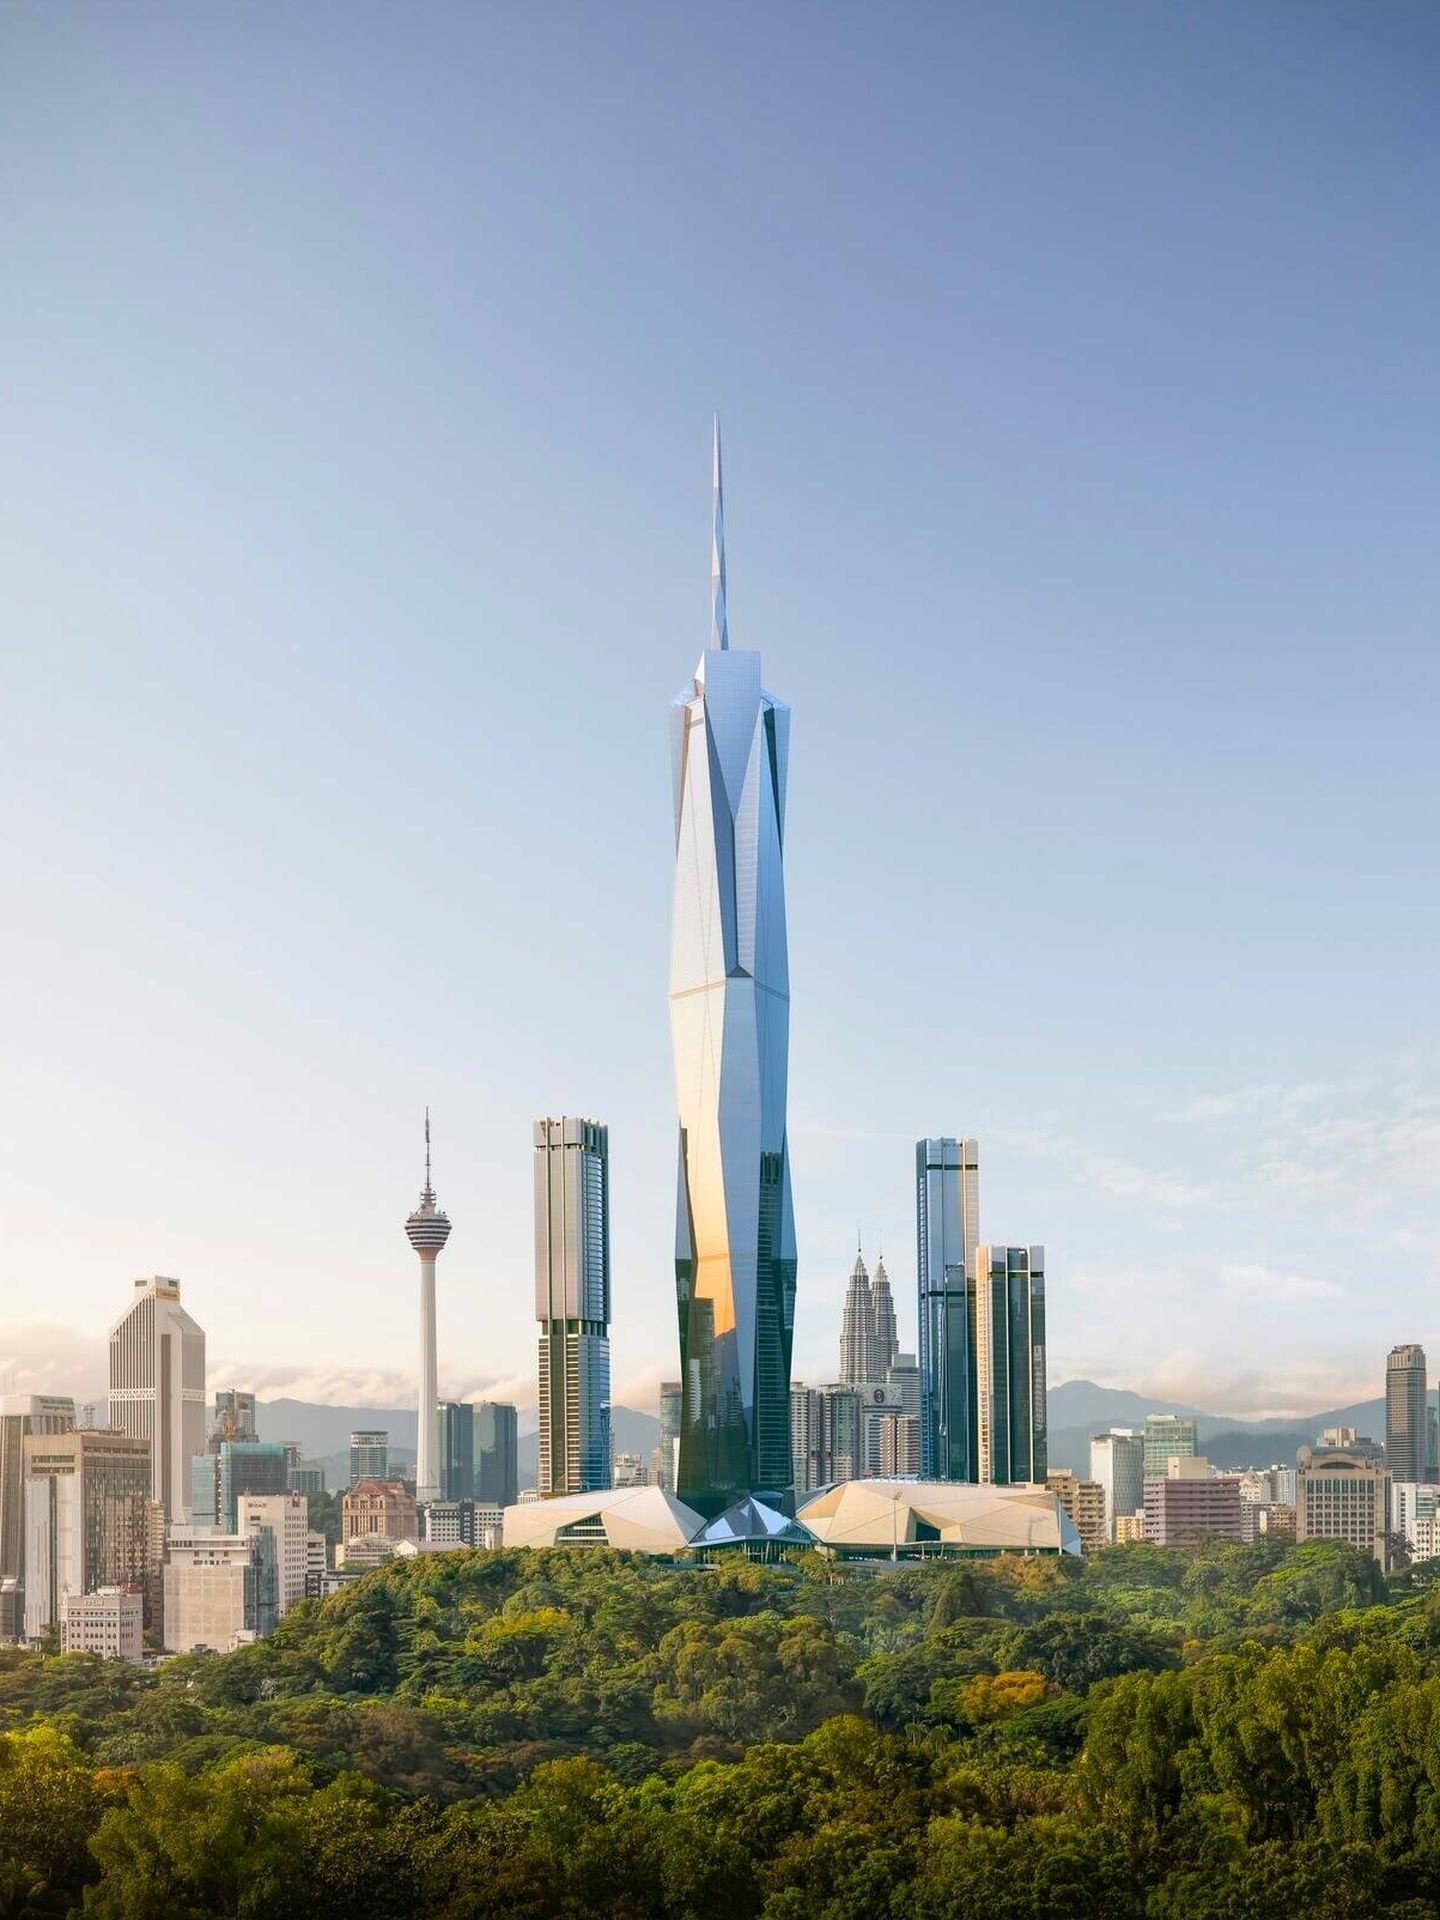 El nuevo rascacielos modifica el 'skyline' de Kuala Lumpur. (Fender Katsalidis)